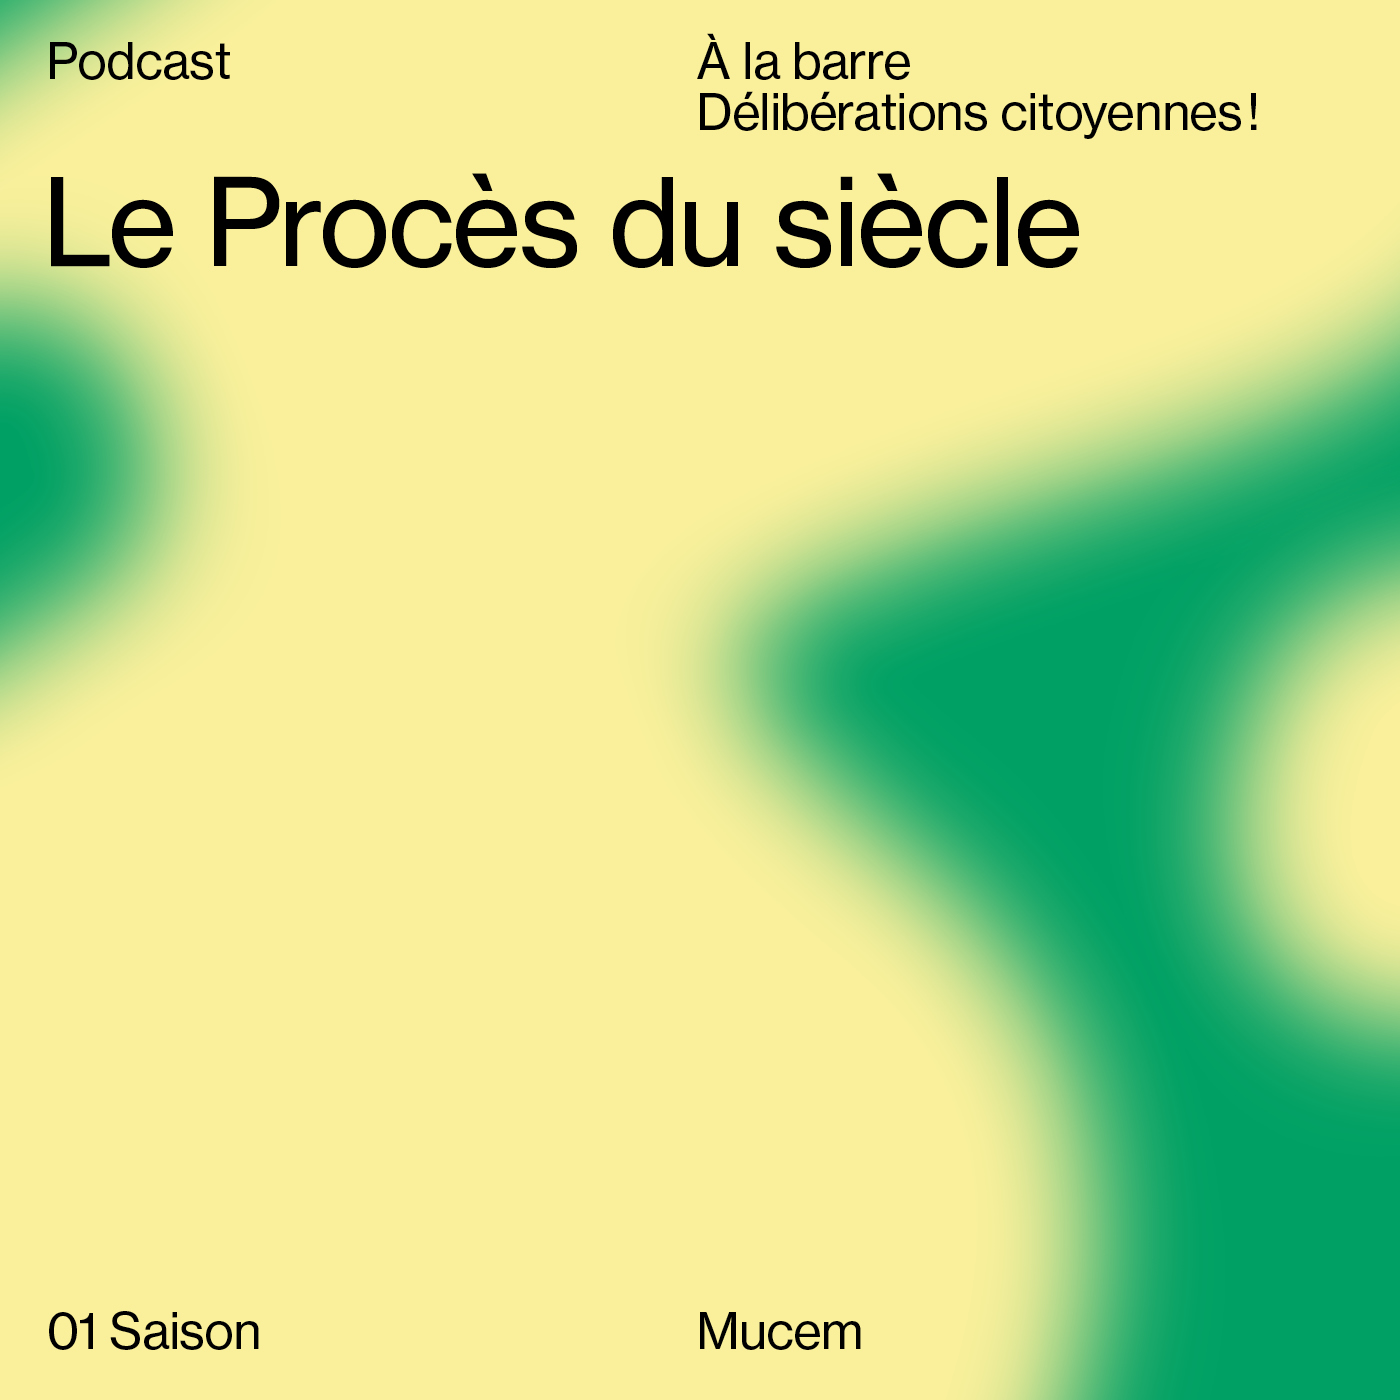 Podcast Le Procès du siècle, délibérations citoyennes !